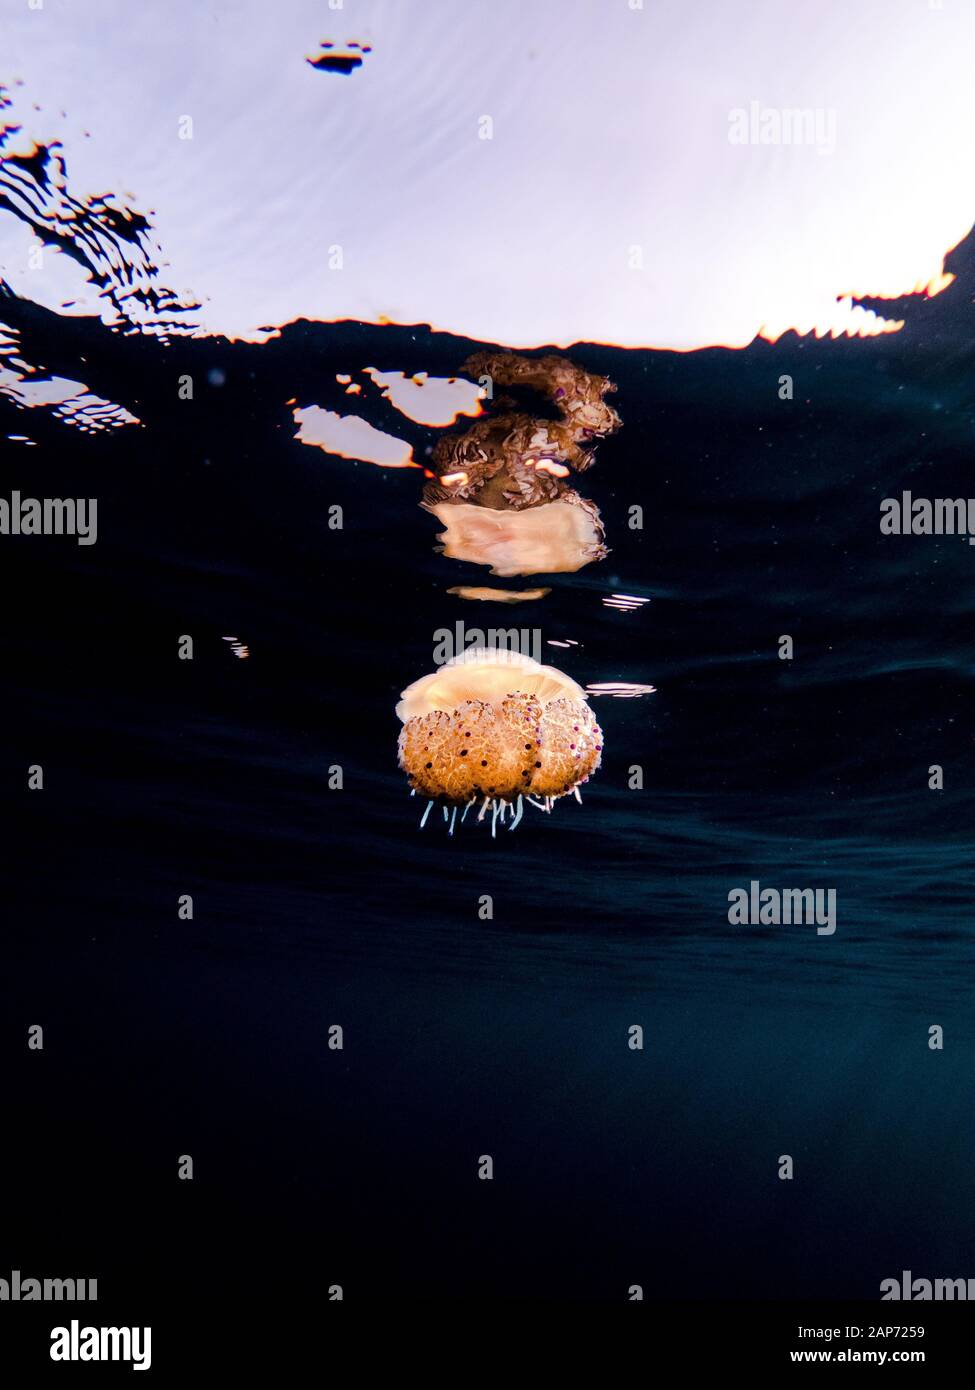 Un colorato uovo fritto medusa (Cotylorhiza tuberculata) in acqua poco profonda nel mare mediterraneo, Spagna Maiorca Foto Stock